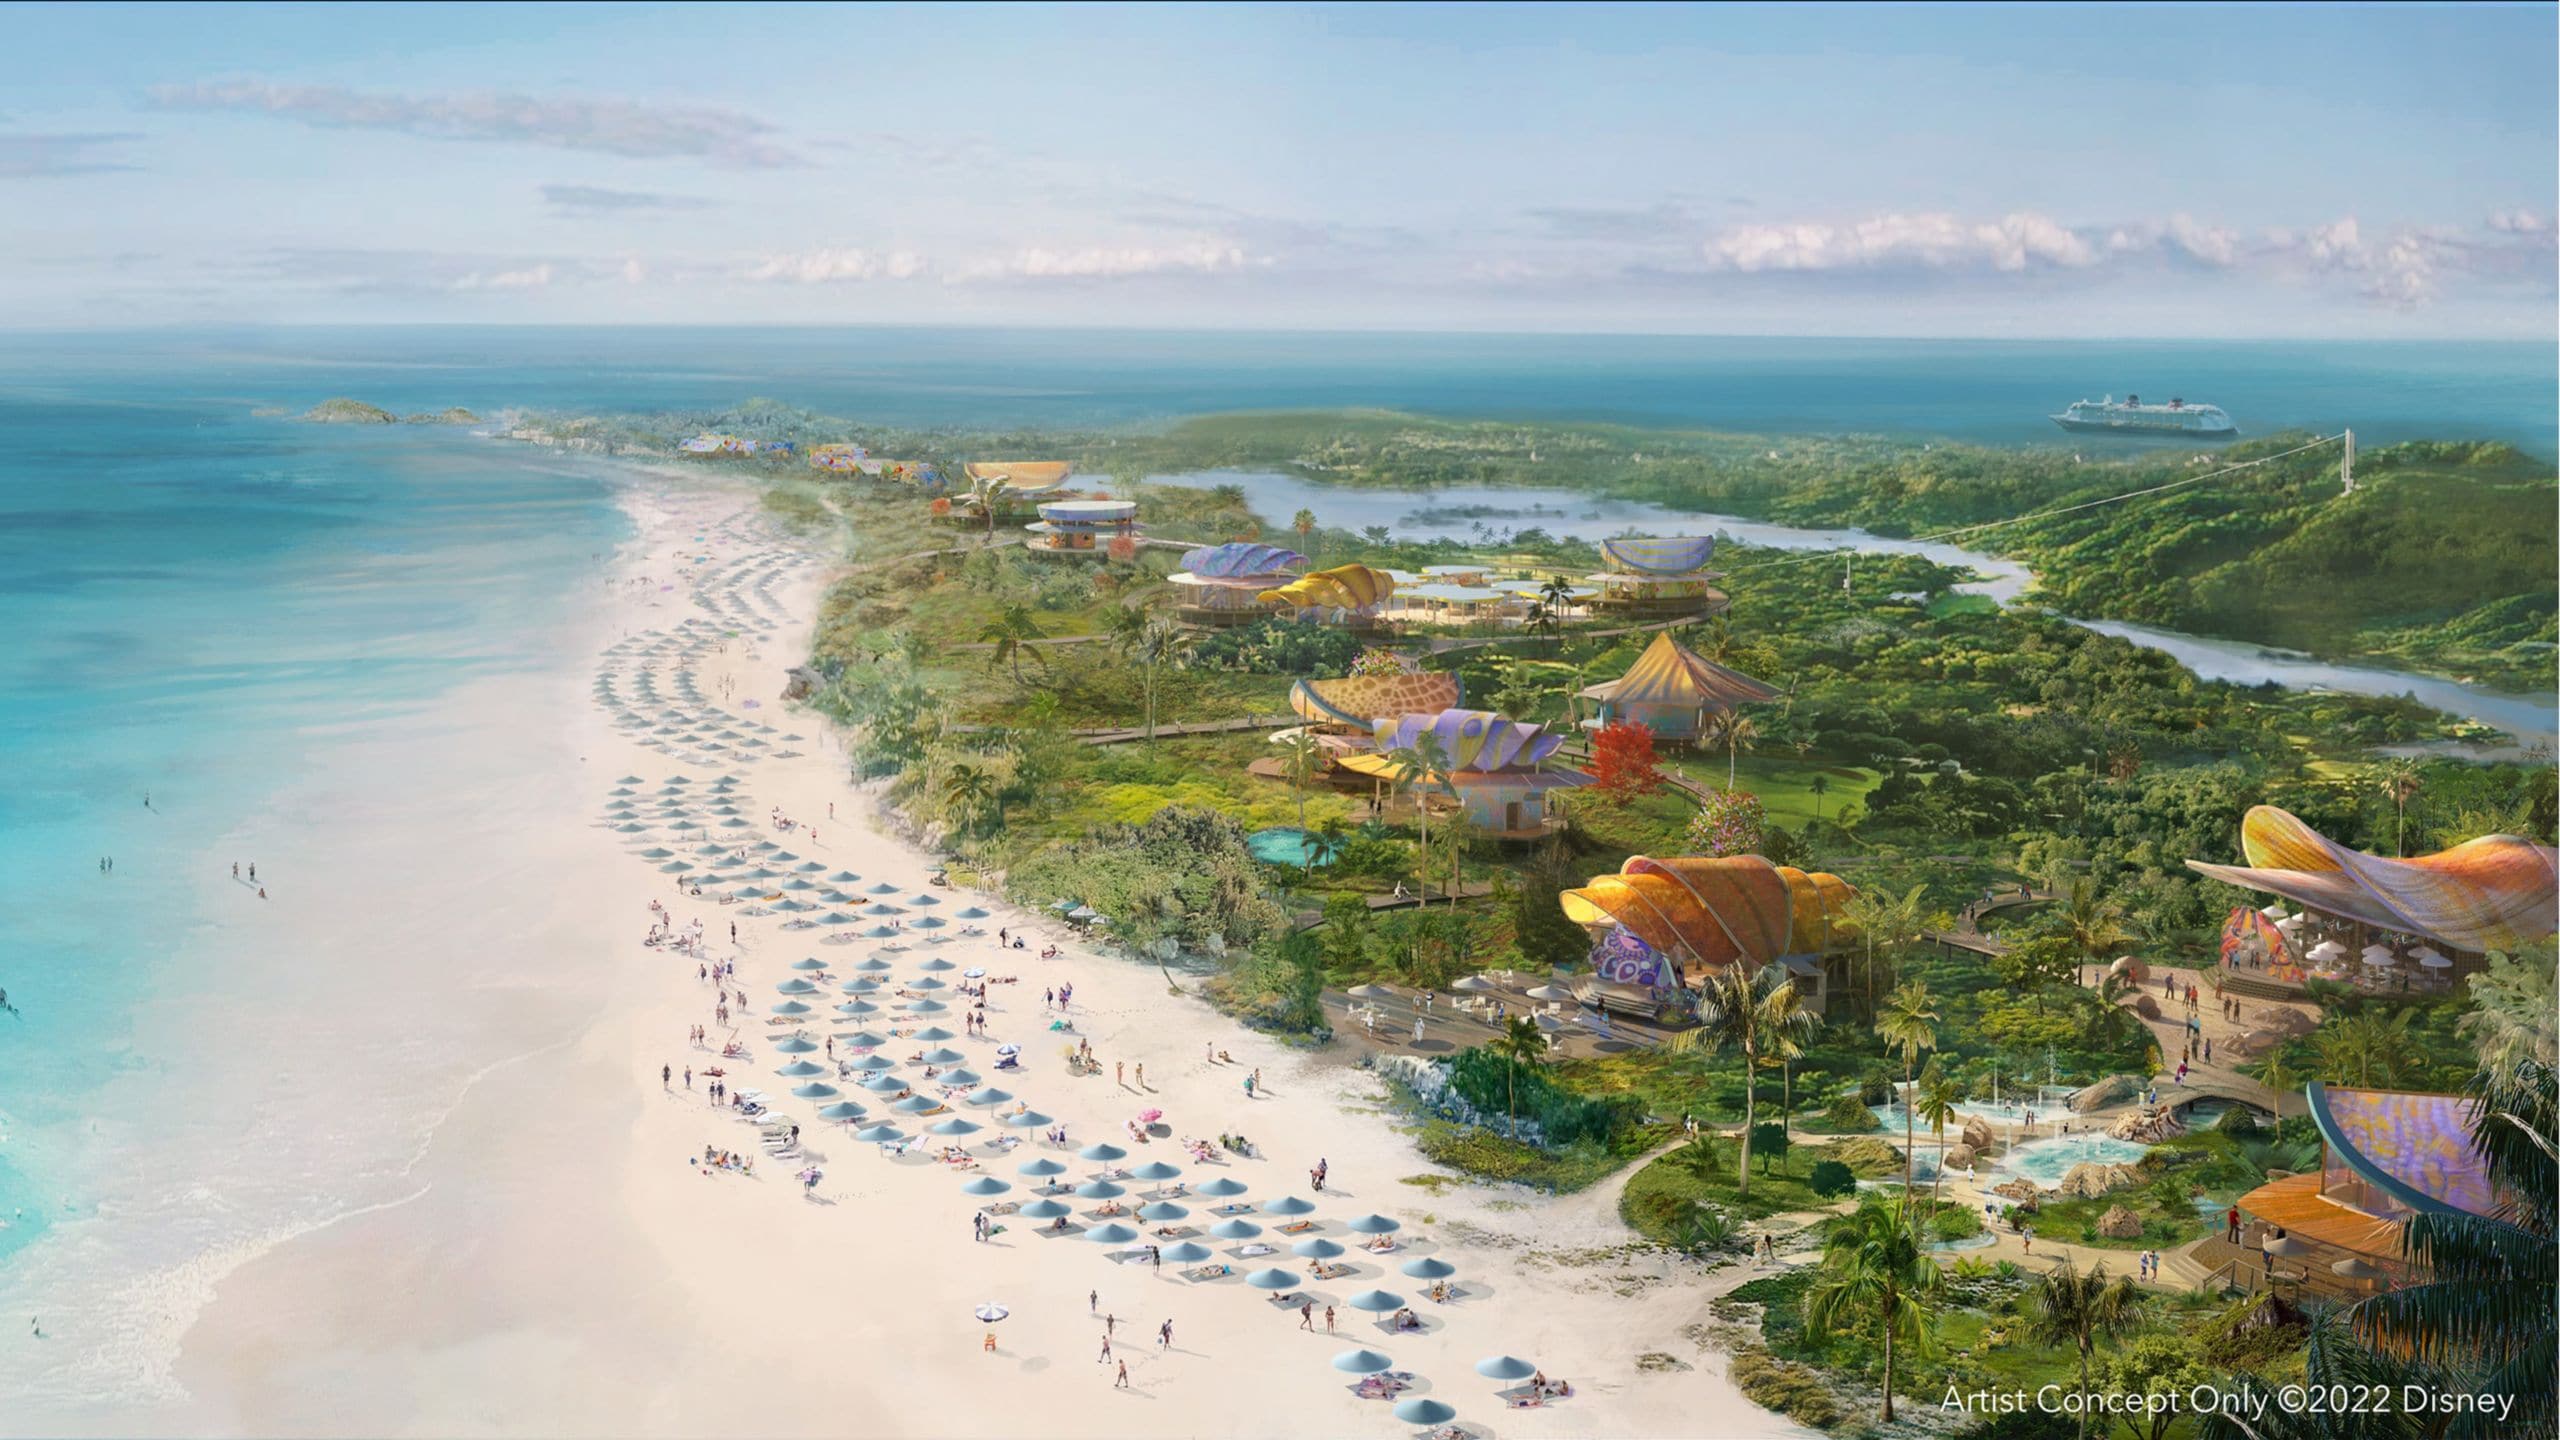 La côte d'une île tropicale luxuriante révèle plusieurs pavillons à grande échelle et une longue étendue de plage bordé de chaises longues